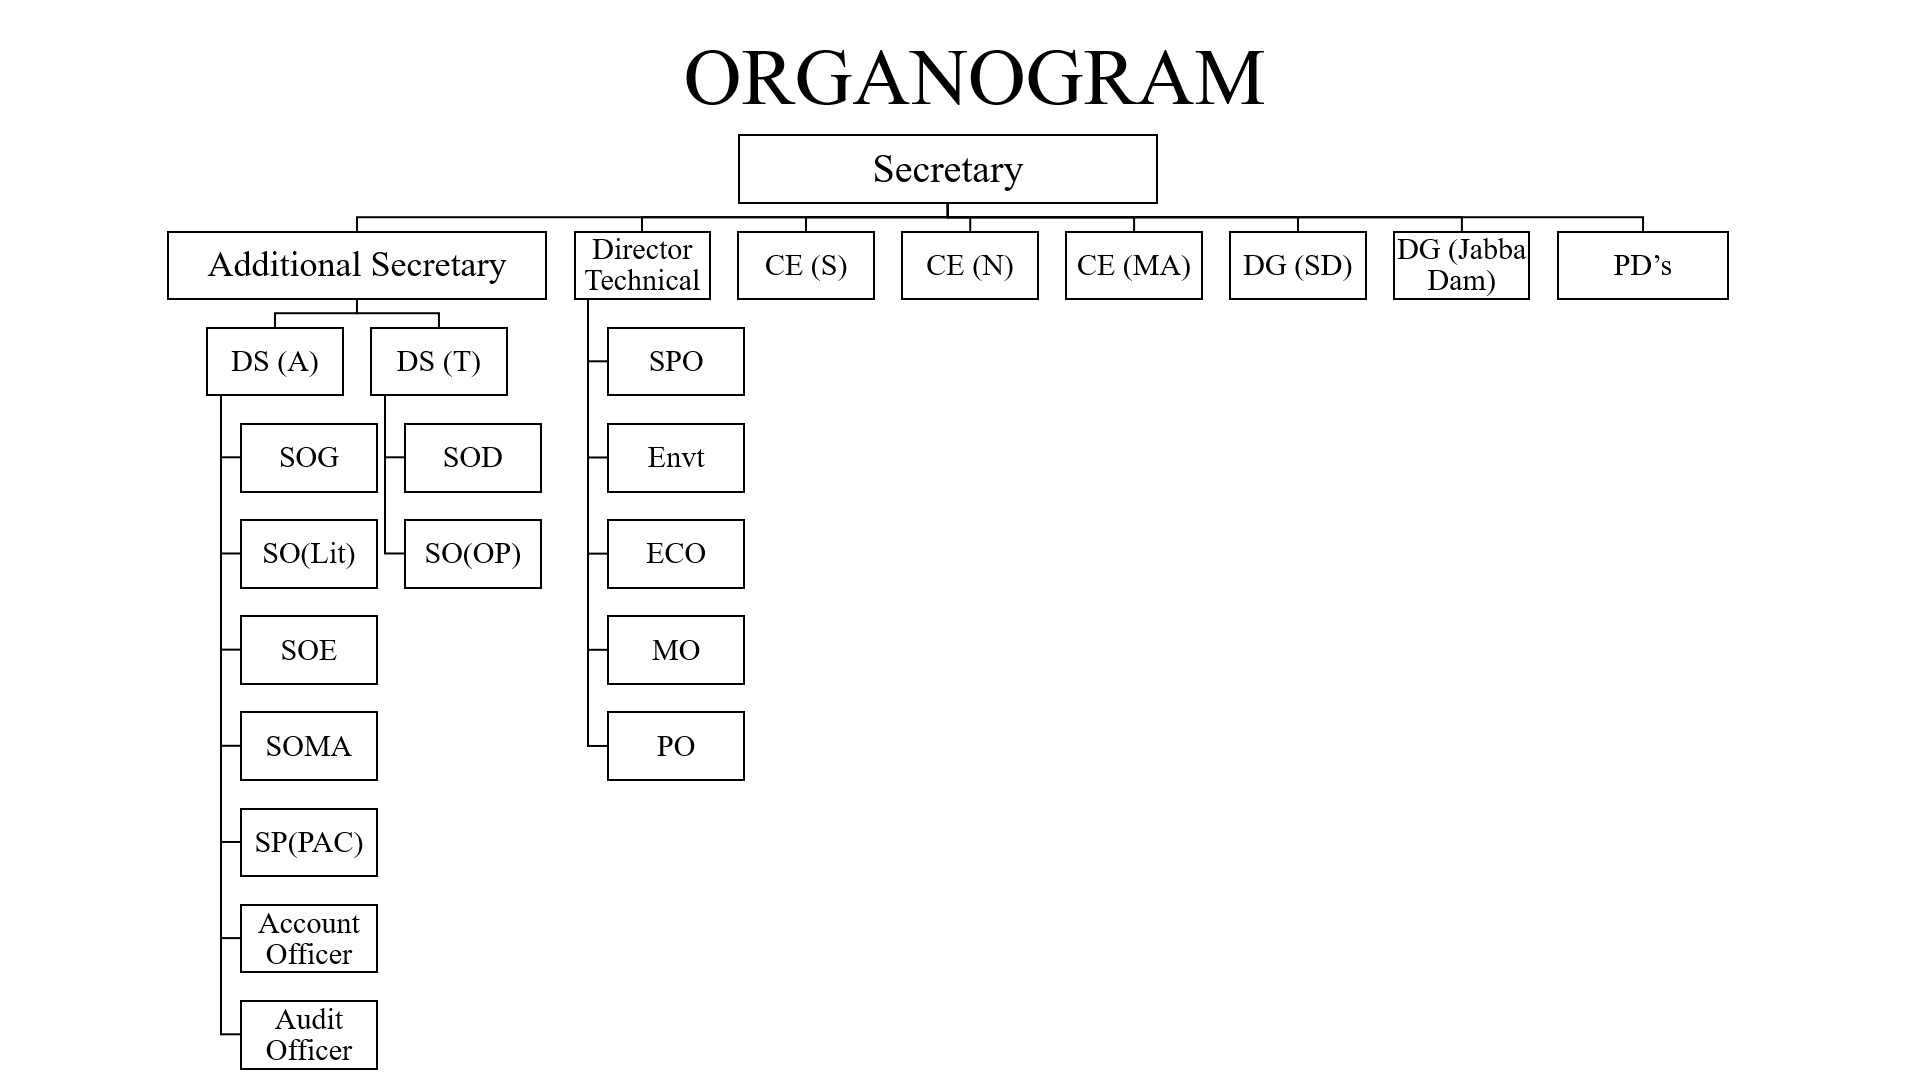 ORGANOGRAM